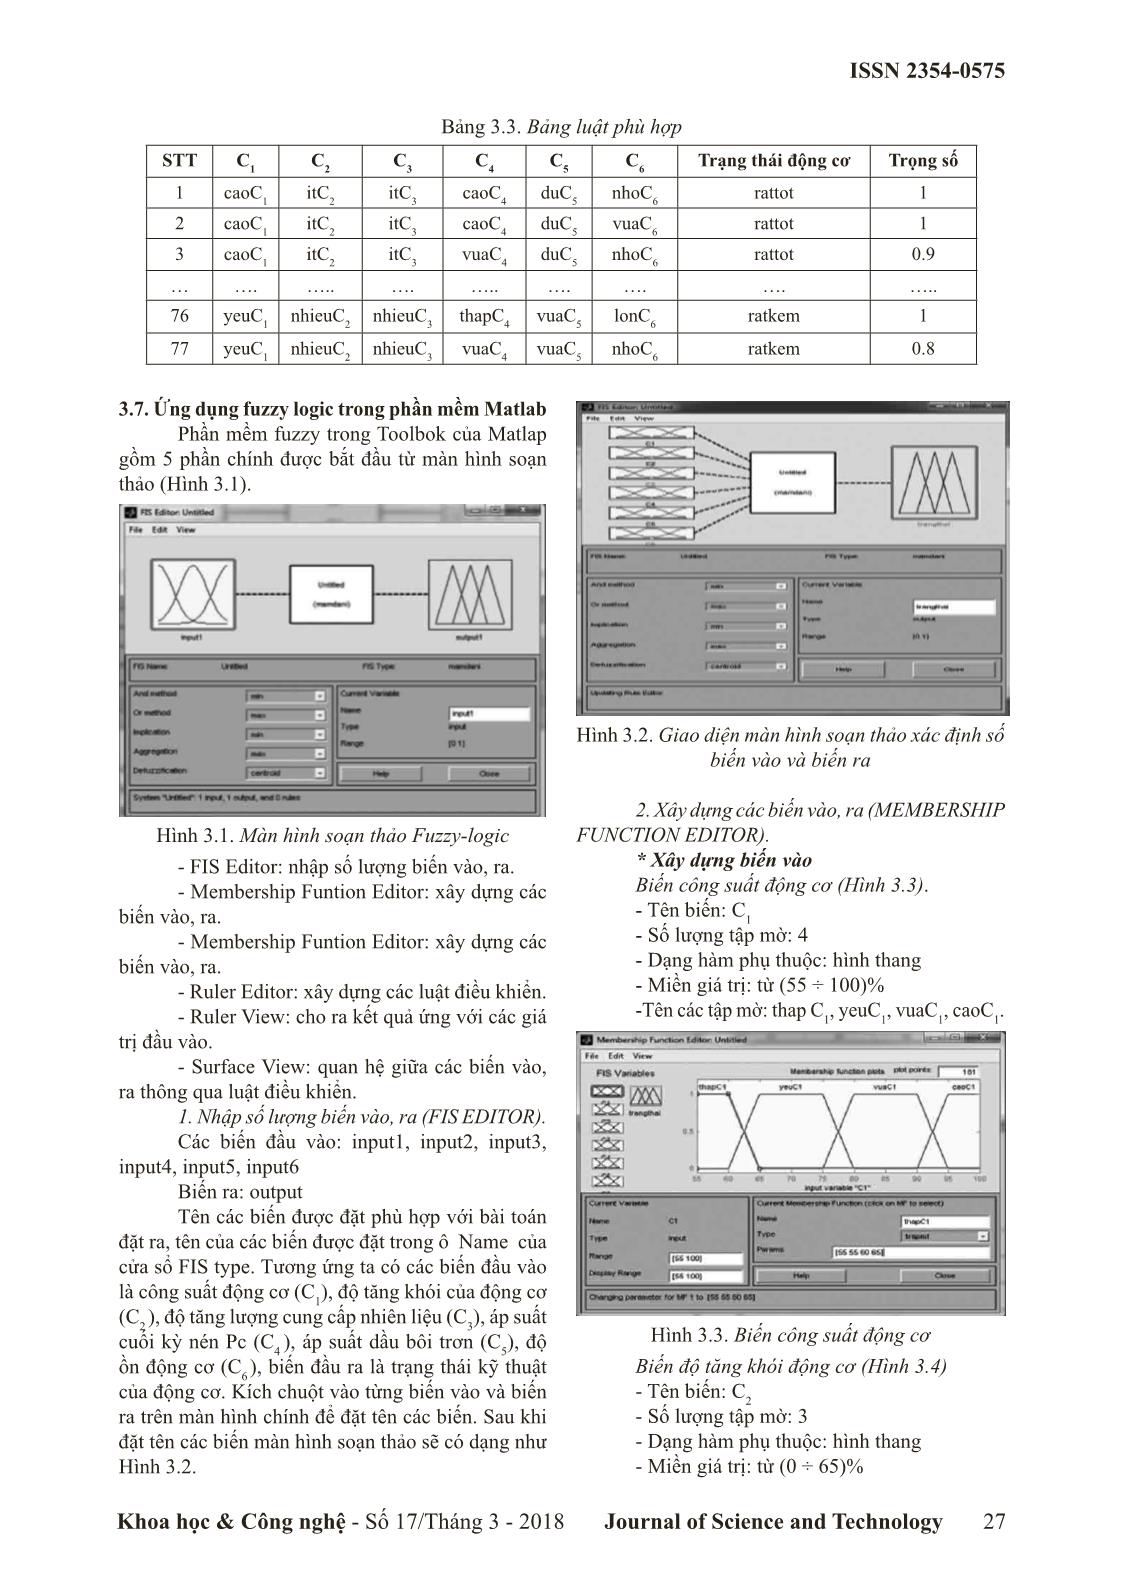 Chẩn đoán trạng thái kỹ thuật của động cơ bằng Logic mờ trang 4